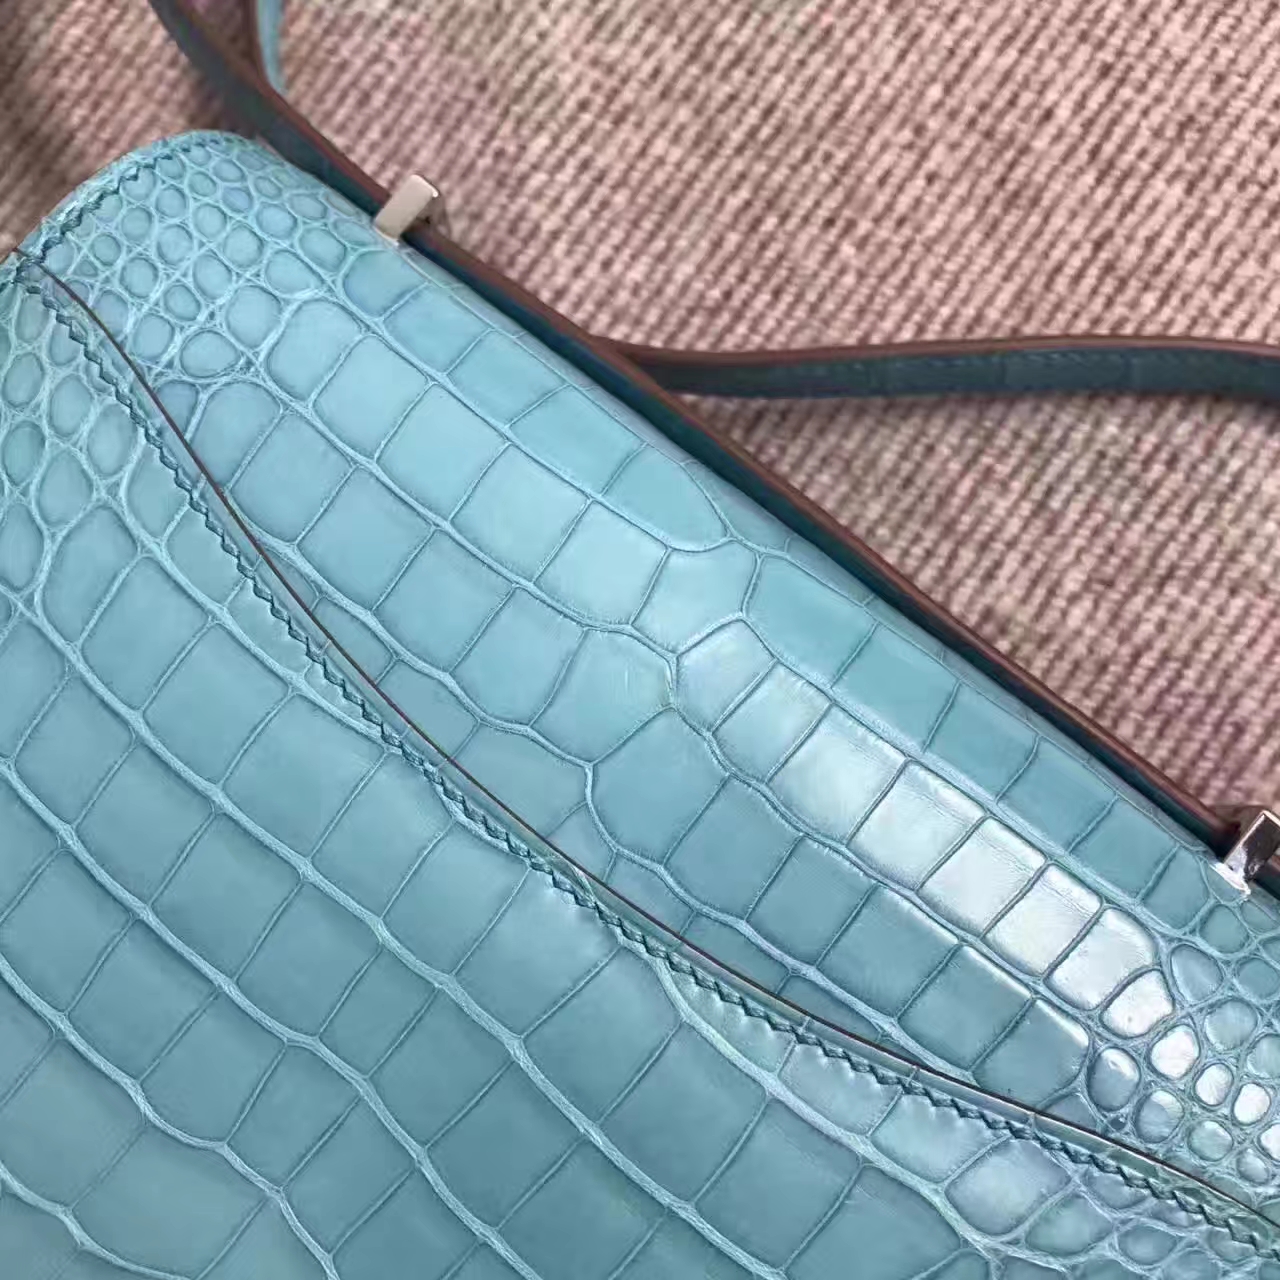 Wholesale Hermes Constance Bag 19cm in 3P Blue Attol  Crocodile Matt Leather